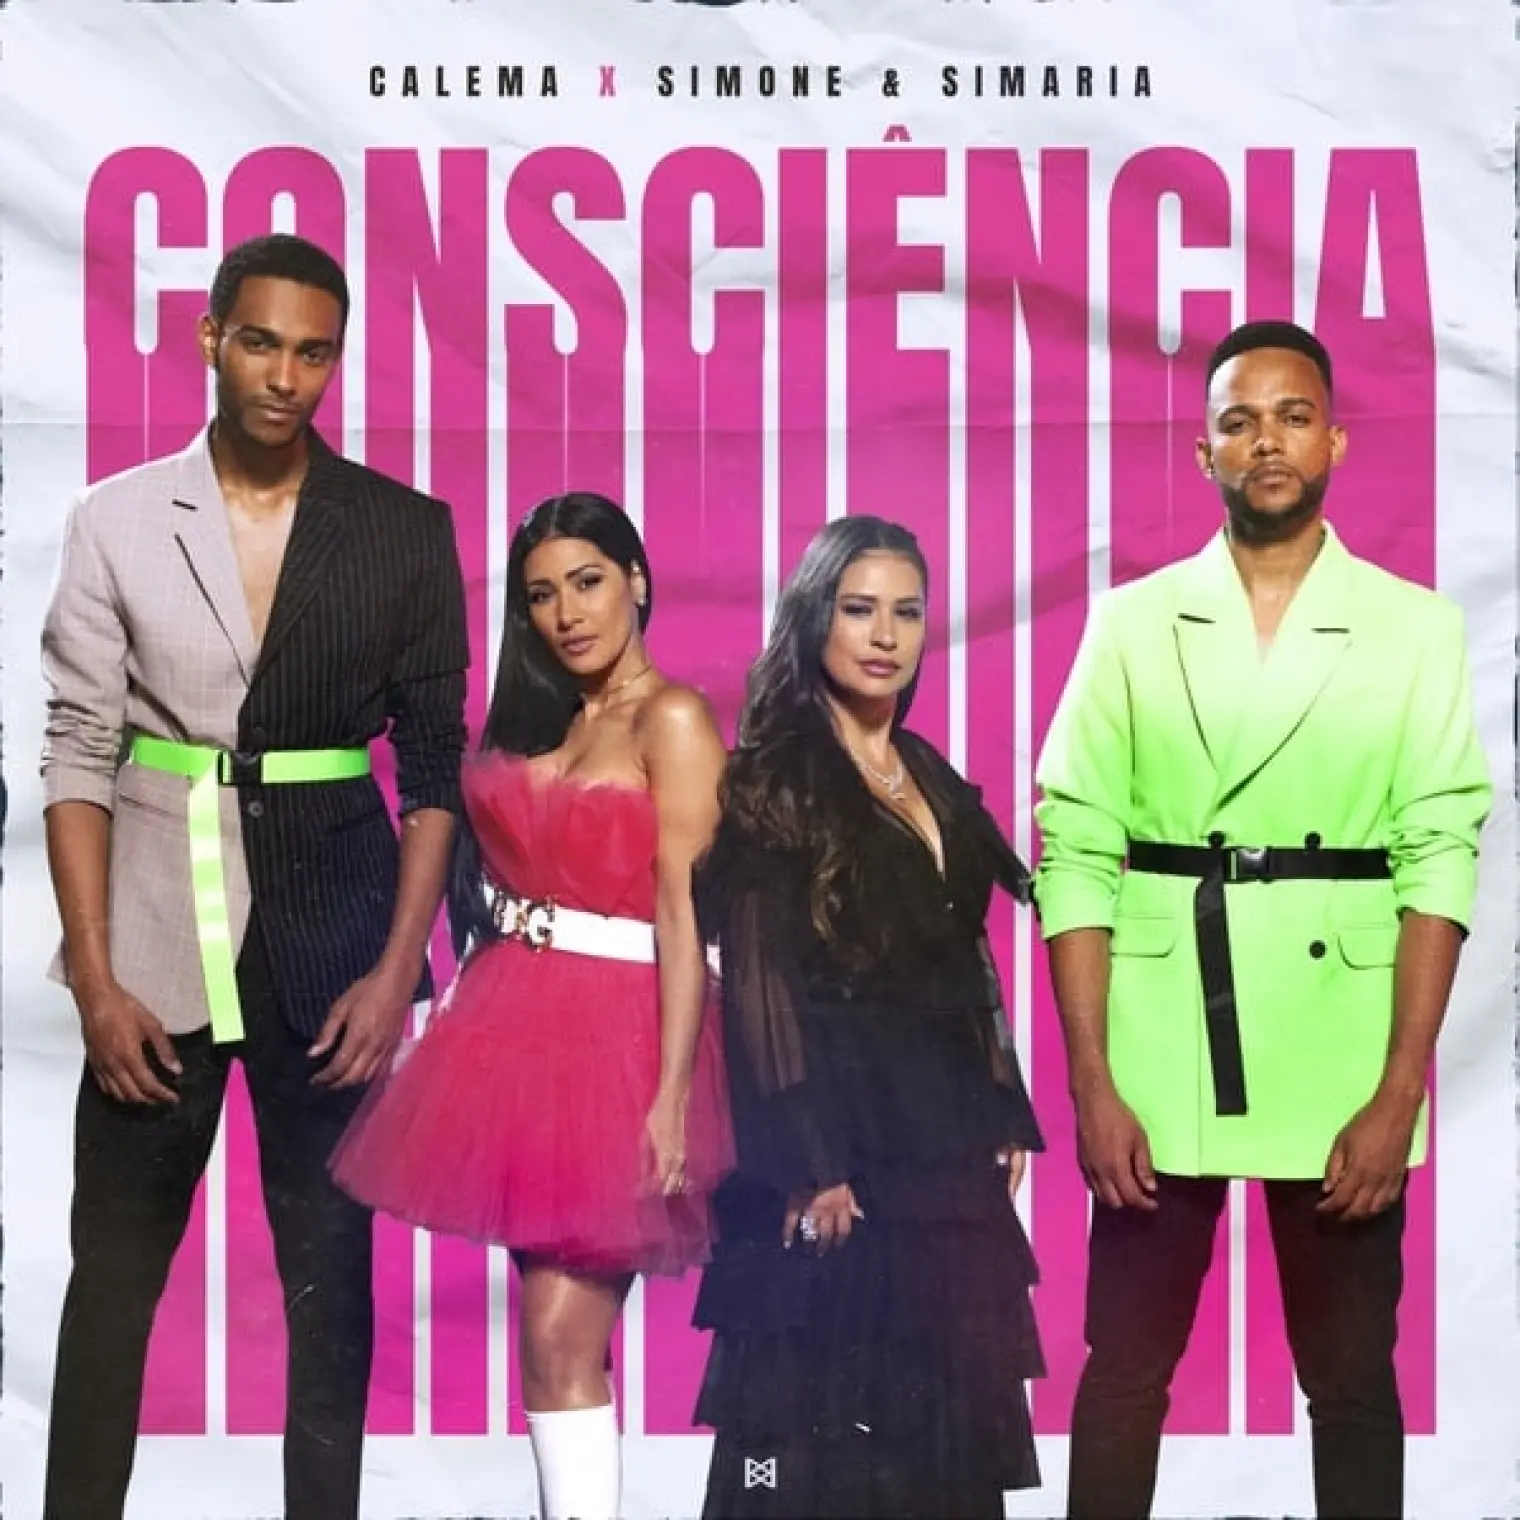 Consciência (feat. Simone & Simaria) -  Calema 